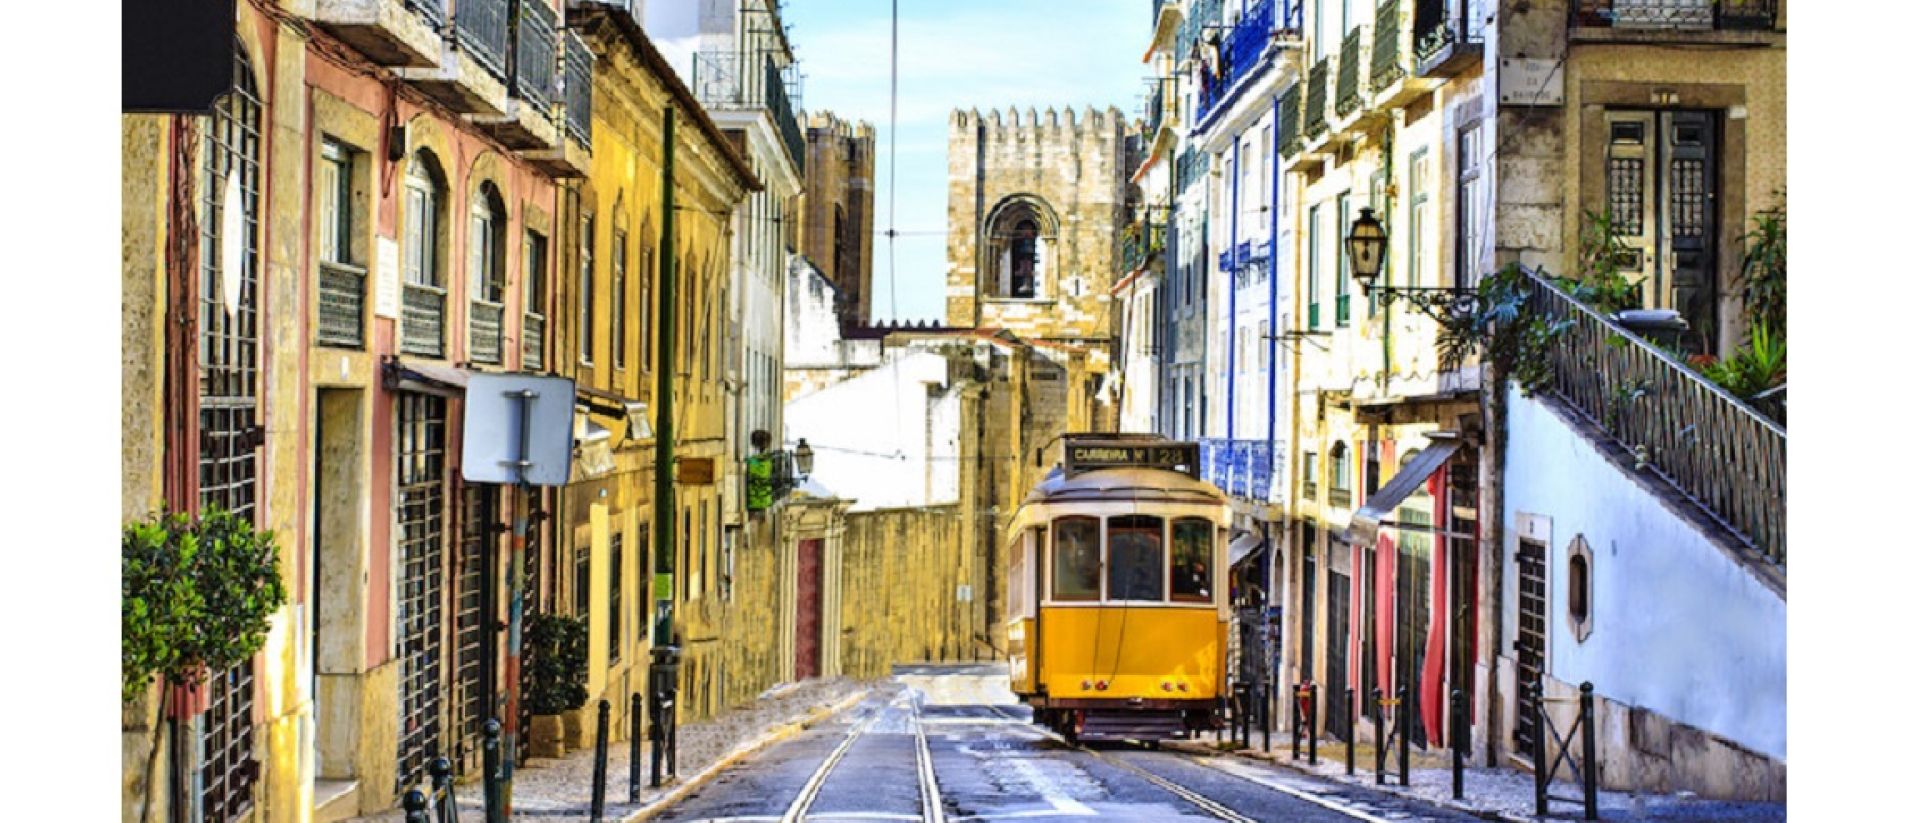 Lisboa no top 3 mundial das cidades com o melhor estilo de vida